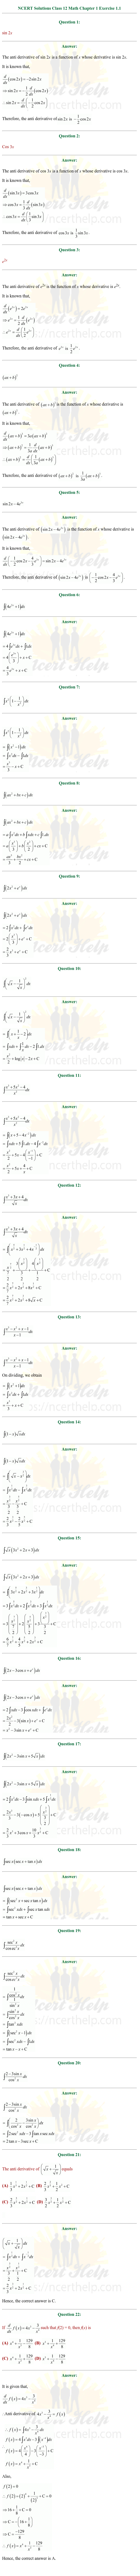 ex.7.1 Class 12 Math Chapter 7 ncert solutions